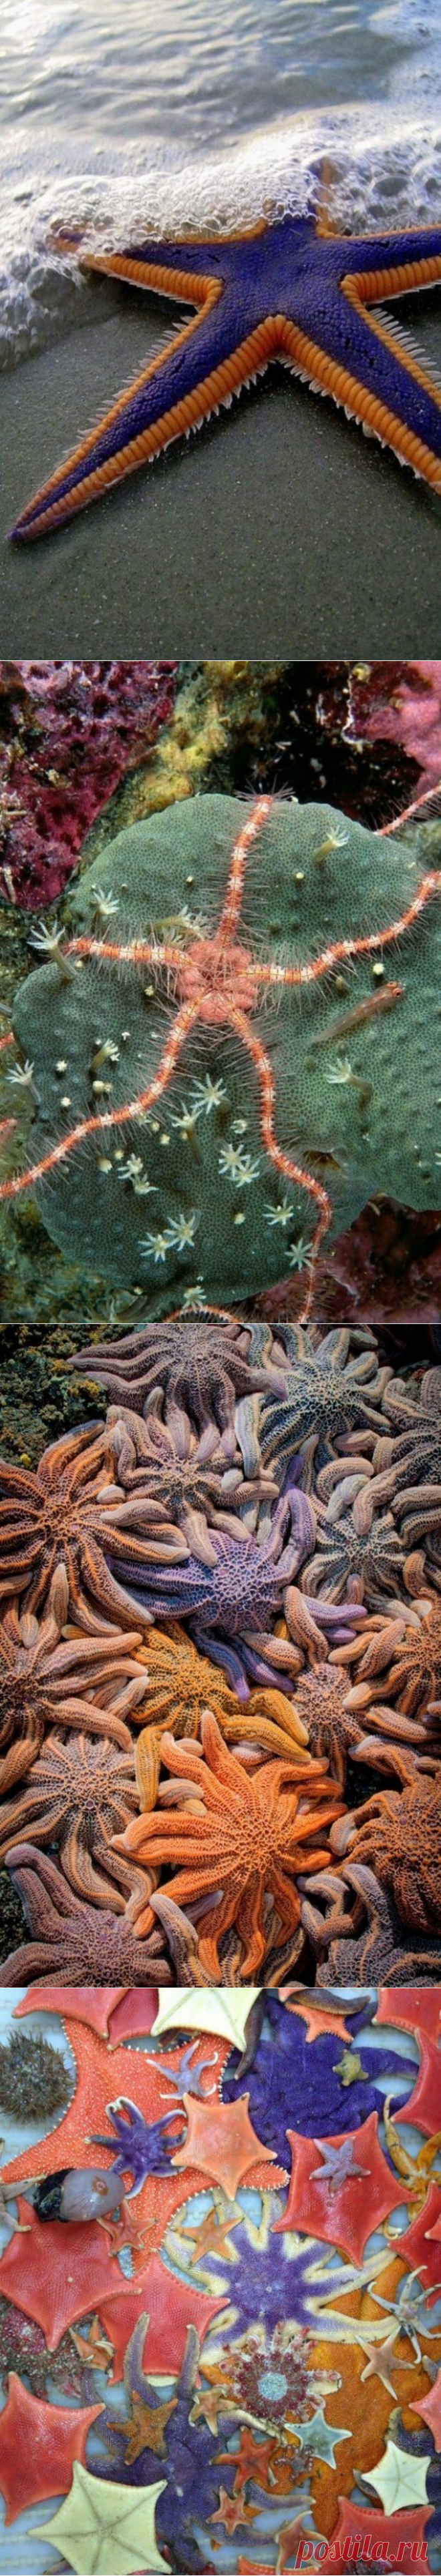 Увлекательные факты о морских звездах, которые вы вряд ли знали — Наука и жизнь